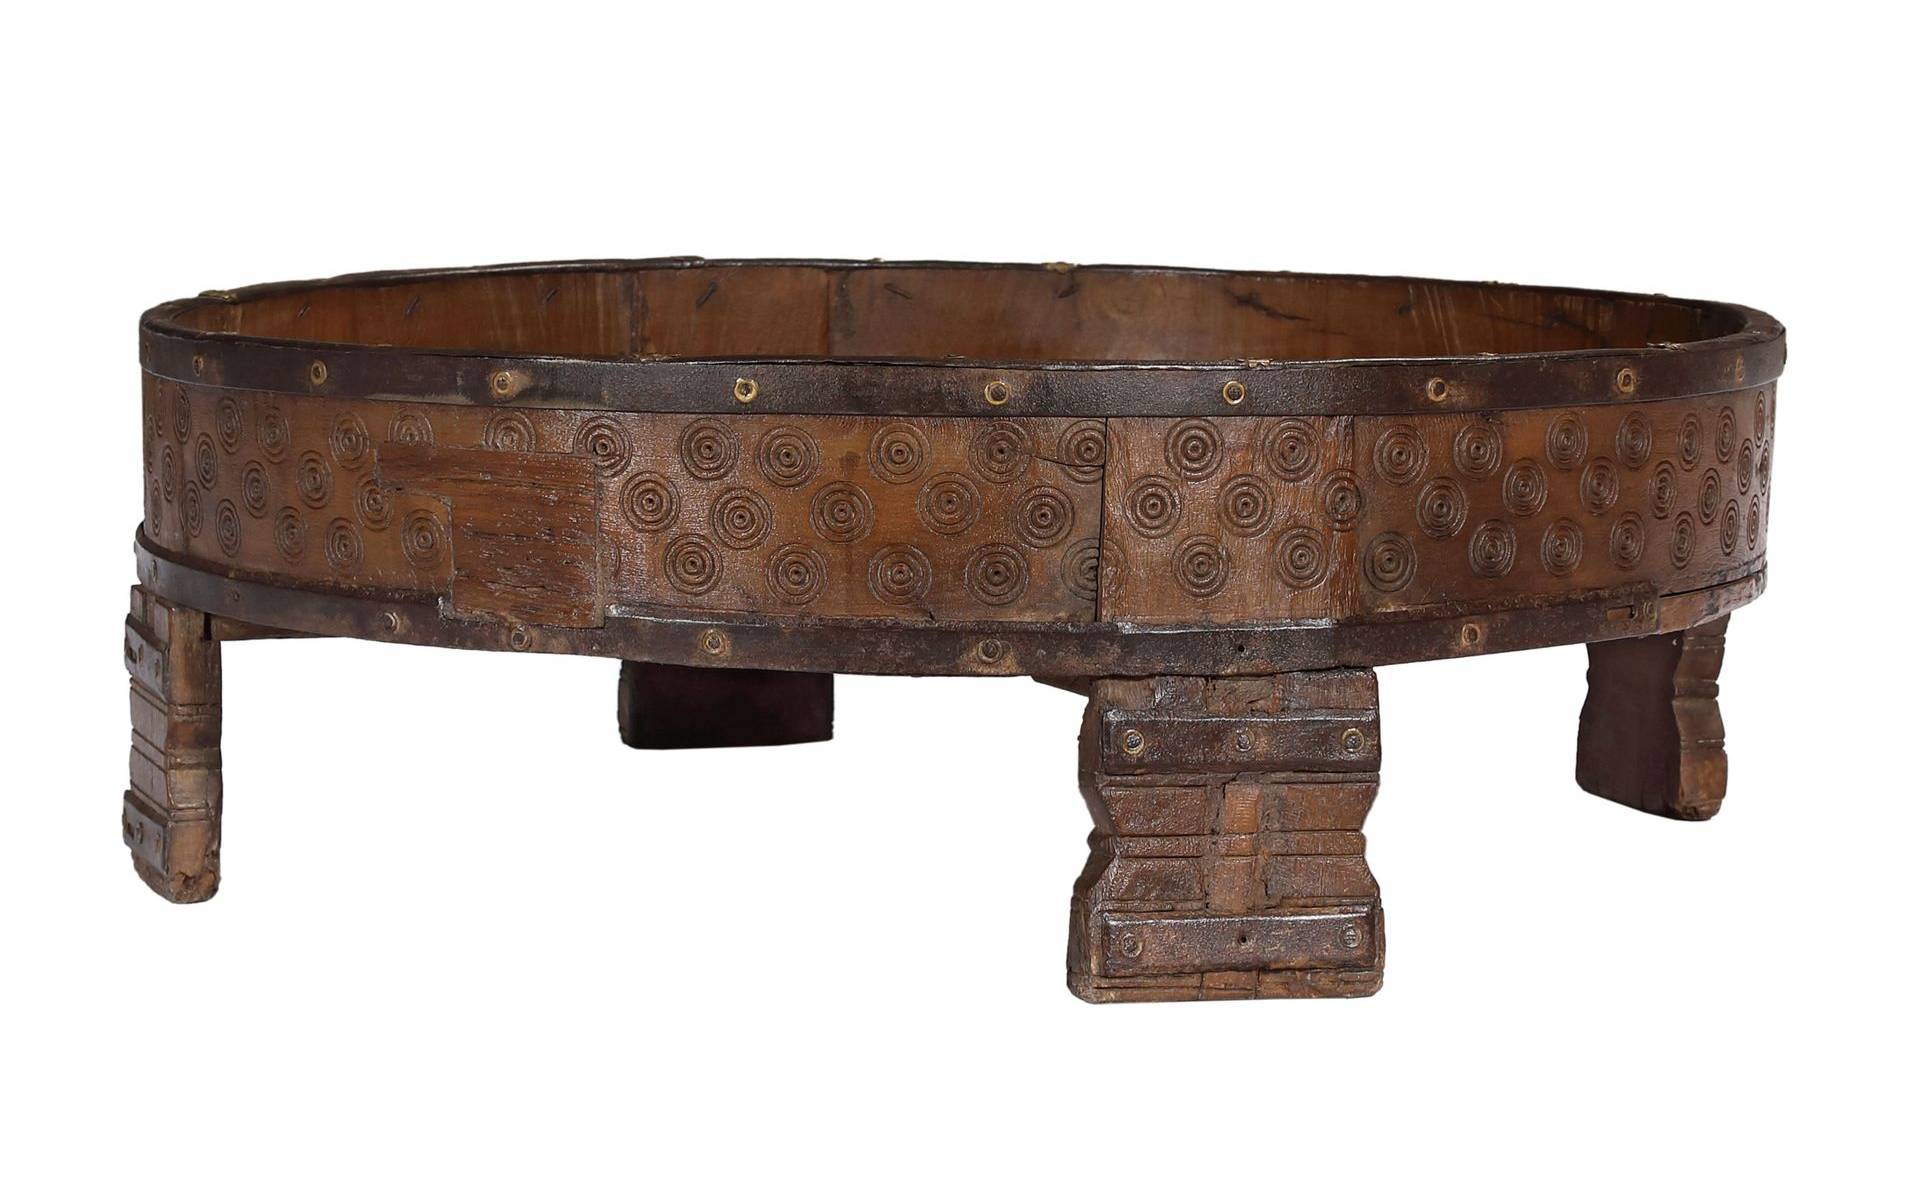 Okrúhly stolík z teakového dreva, 72x72x23cm